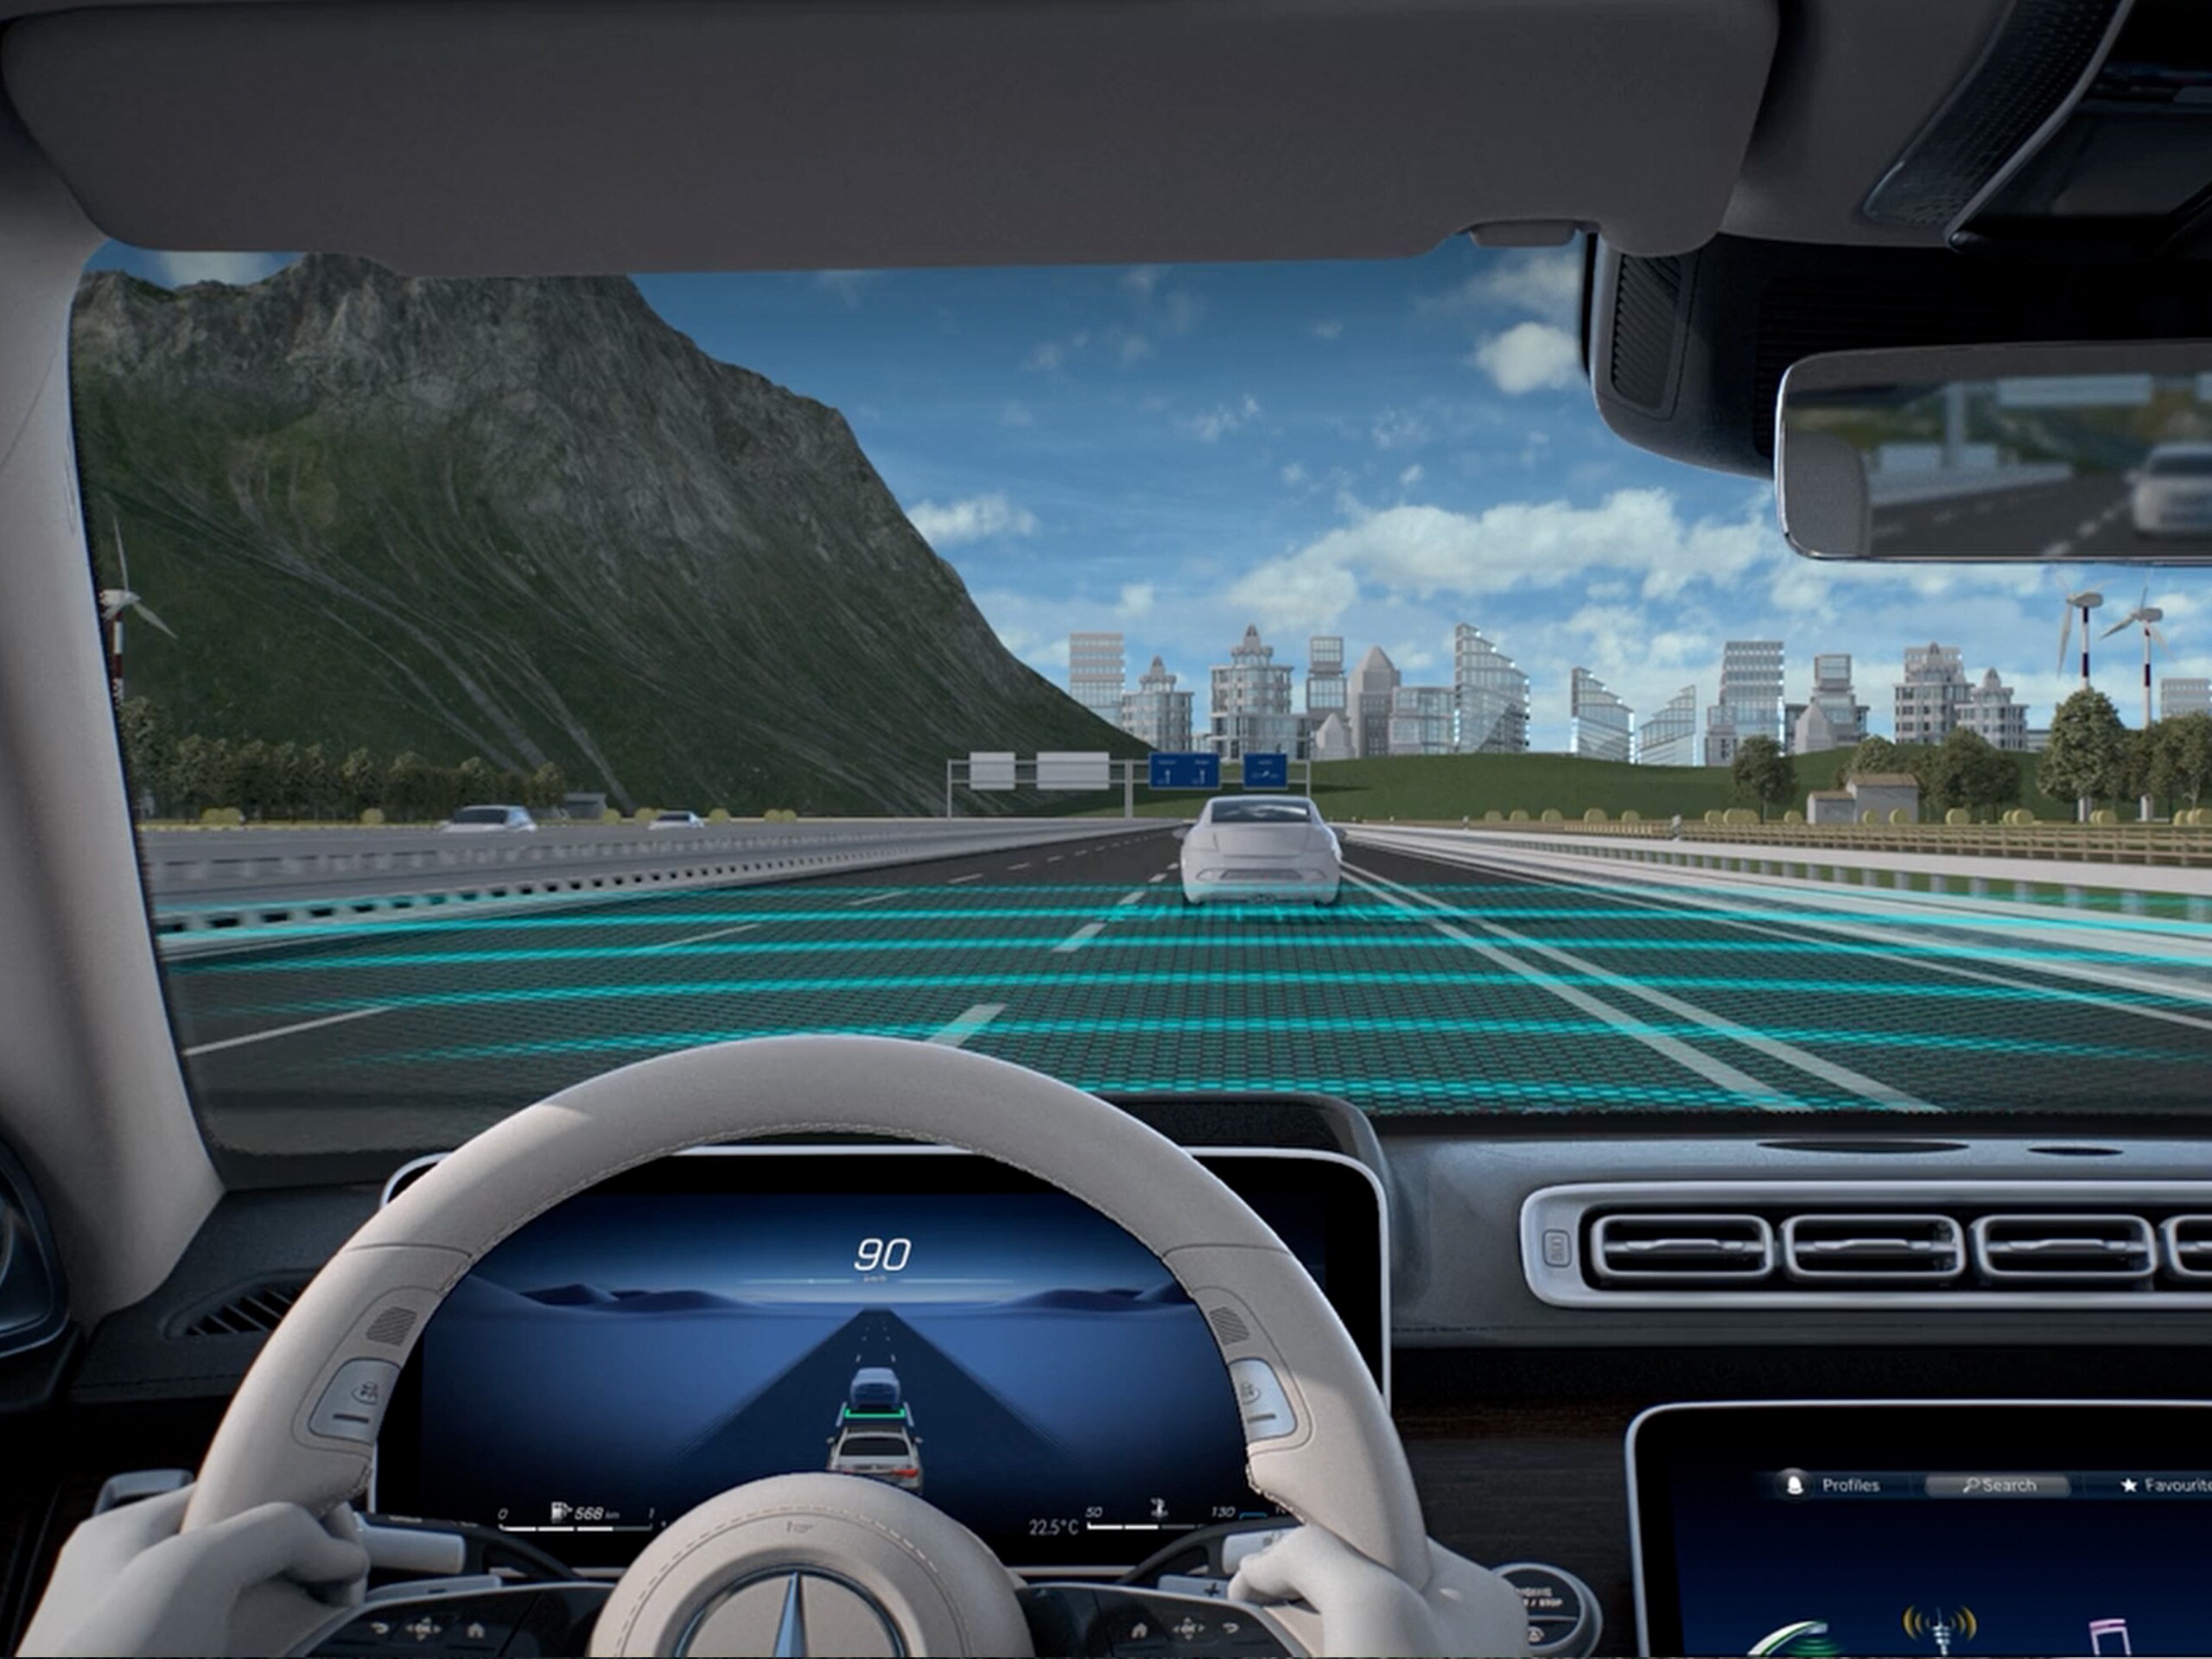 Videoda, Mercedes-Maybach S-Serisindeki DISTRONIC, Aktif Takip Yardımcısı'nın çalışma şekilleri gösterilmektedir.